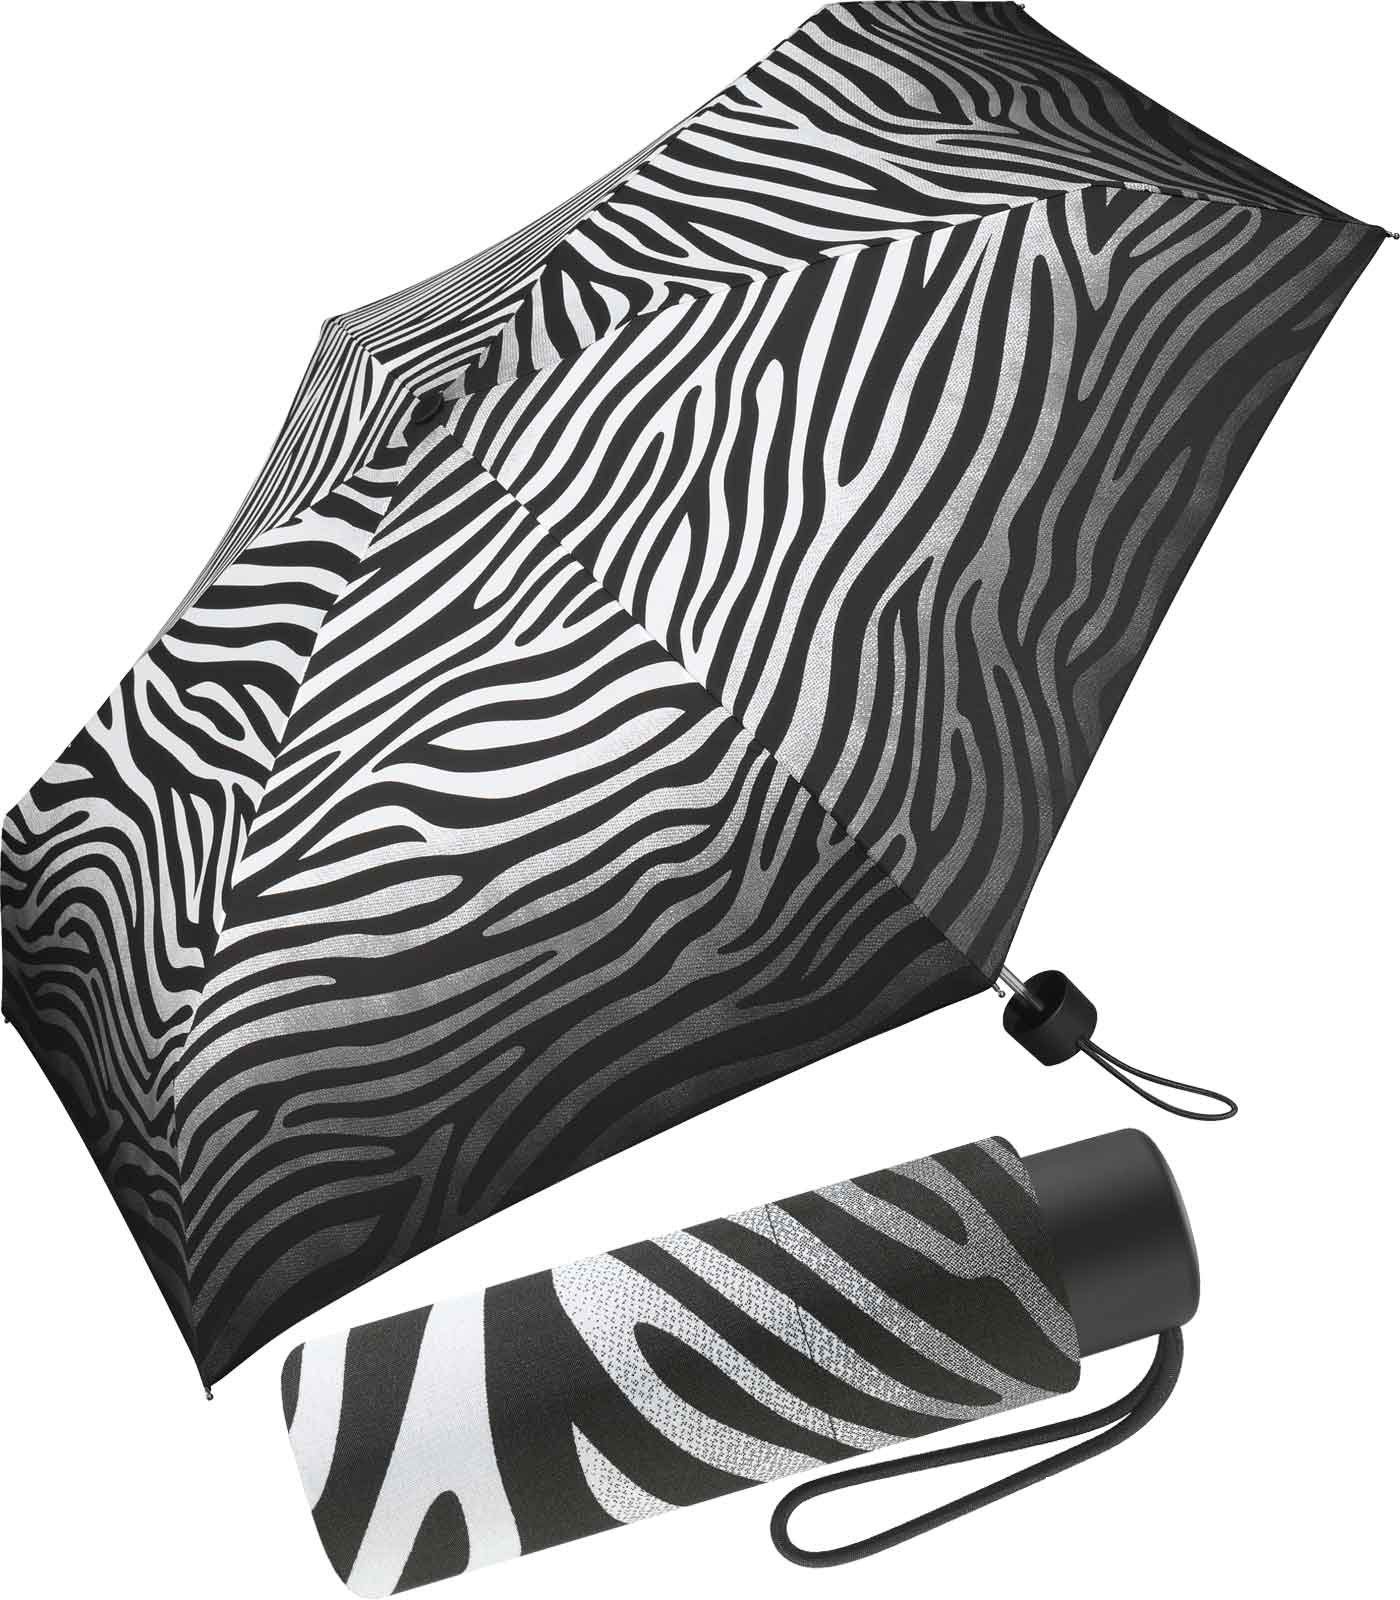 Pierre Cardin Langregenschirm winziger Damen-Taschenschirm mit Handöffner, mit tierisch schönem Zebra-Muster